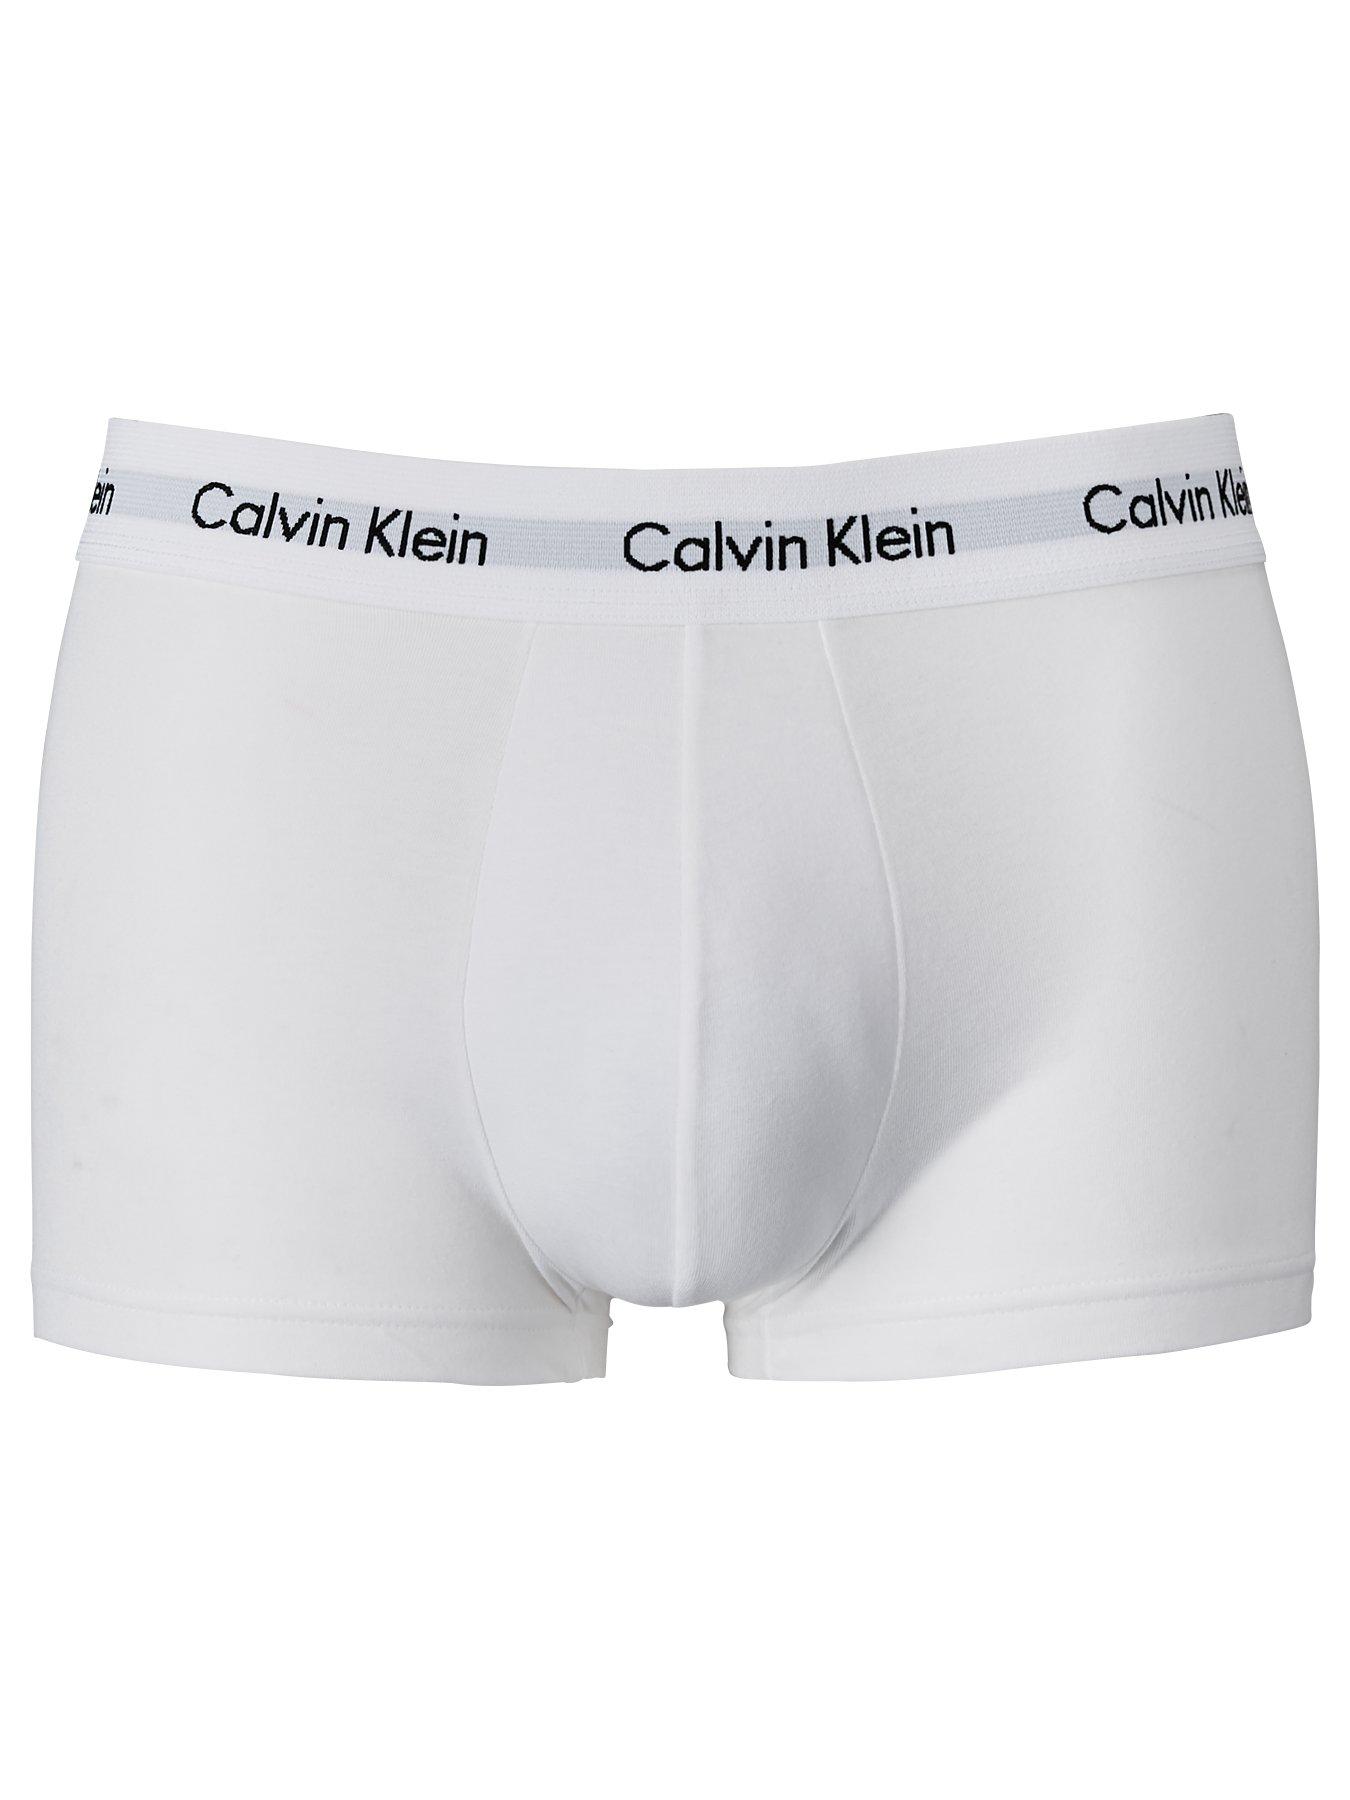 Examples of Calvin Klein serial numbers